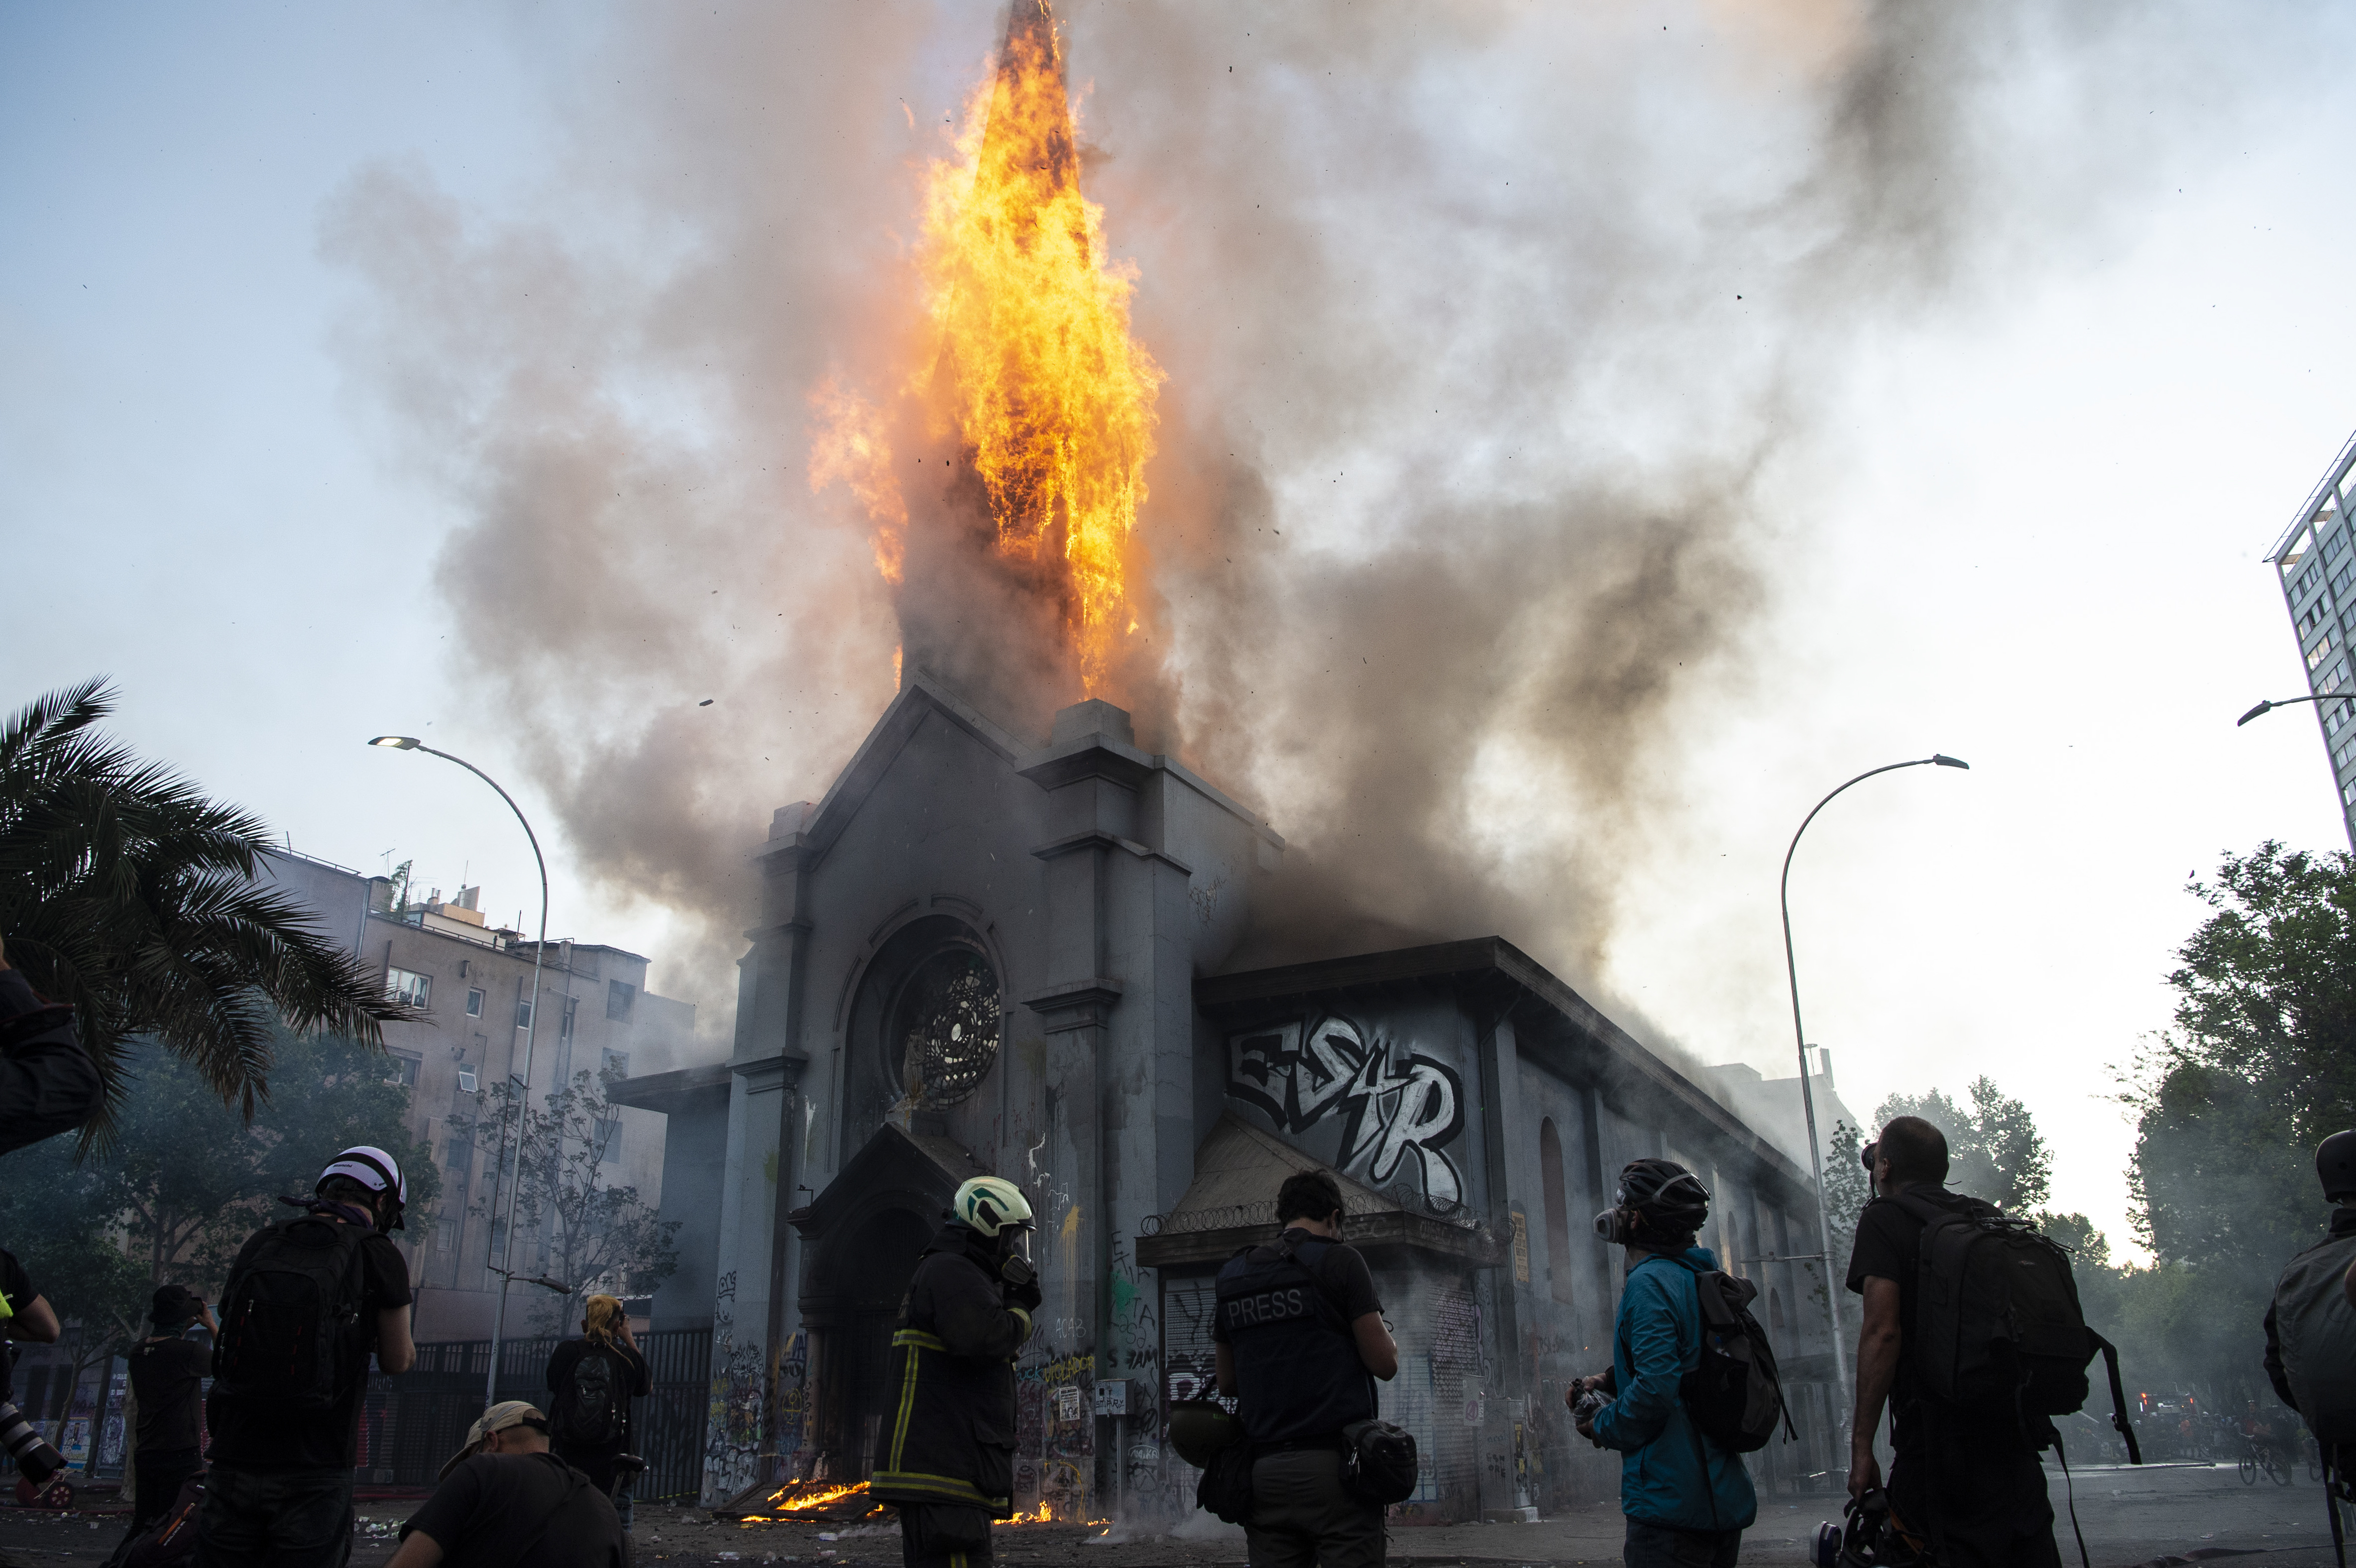 Impactantes FOTOS tras la devastación que dejaron los incendiarios disturbios en Chile